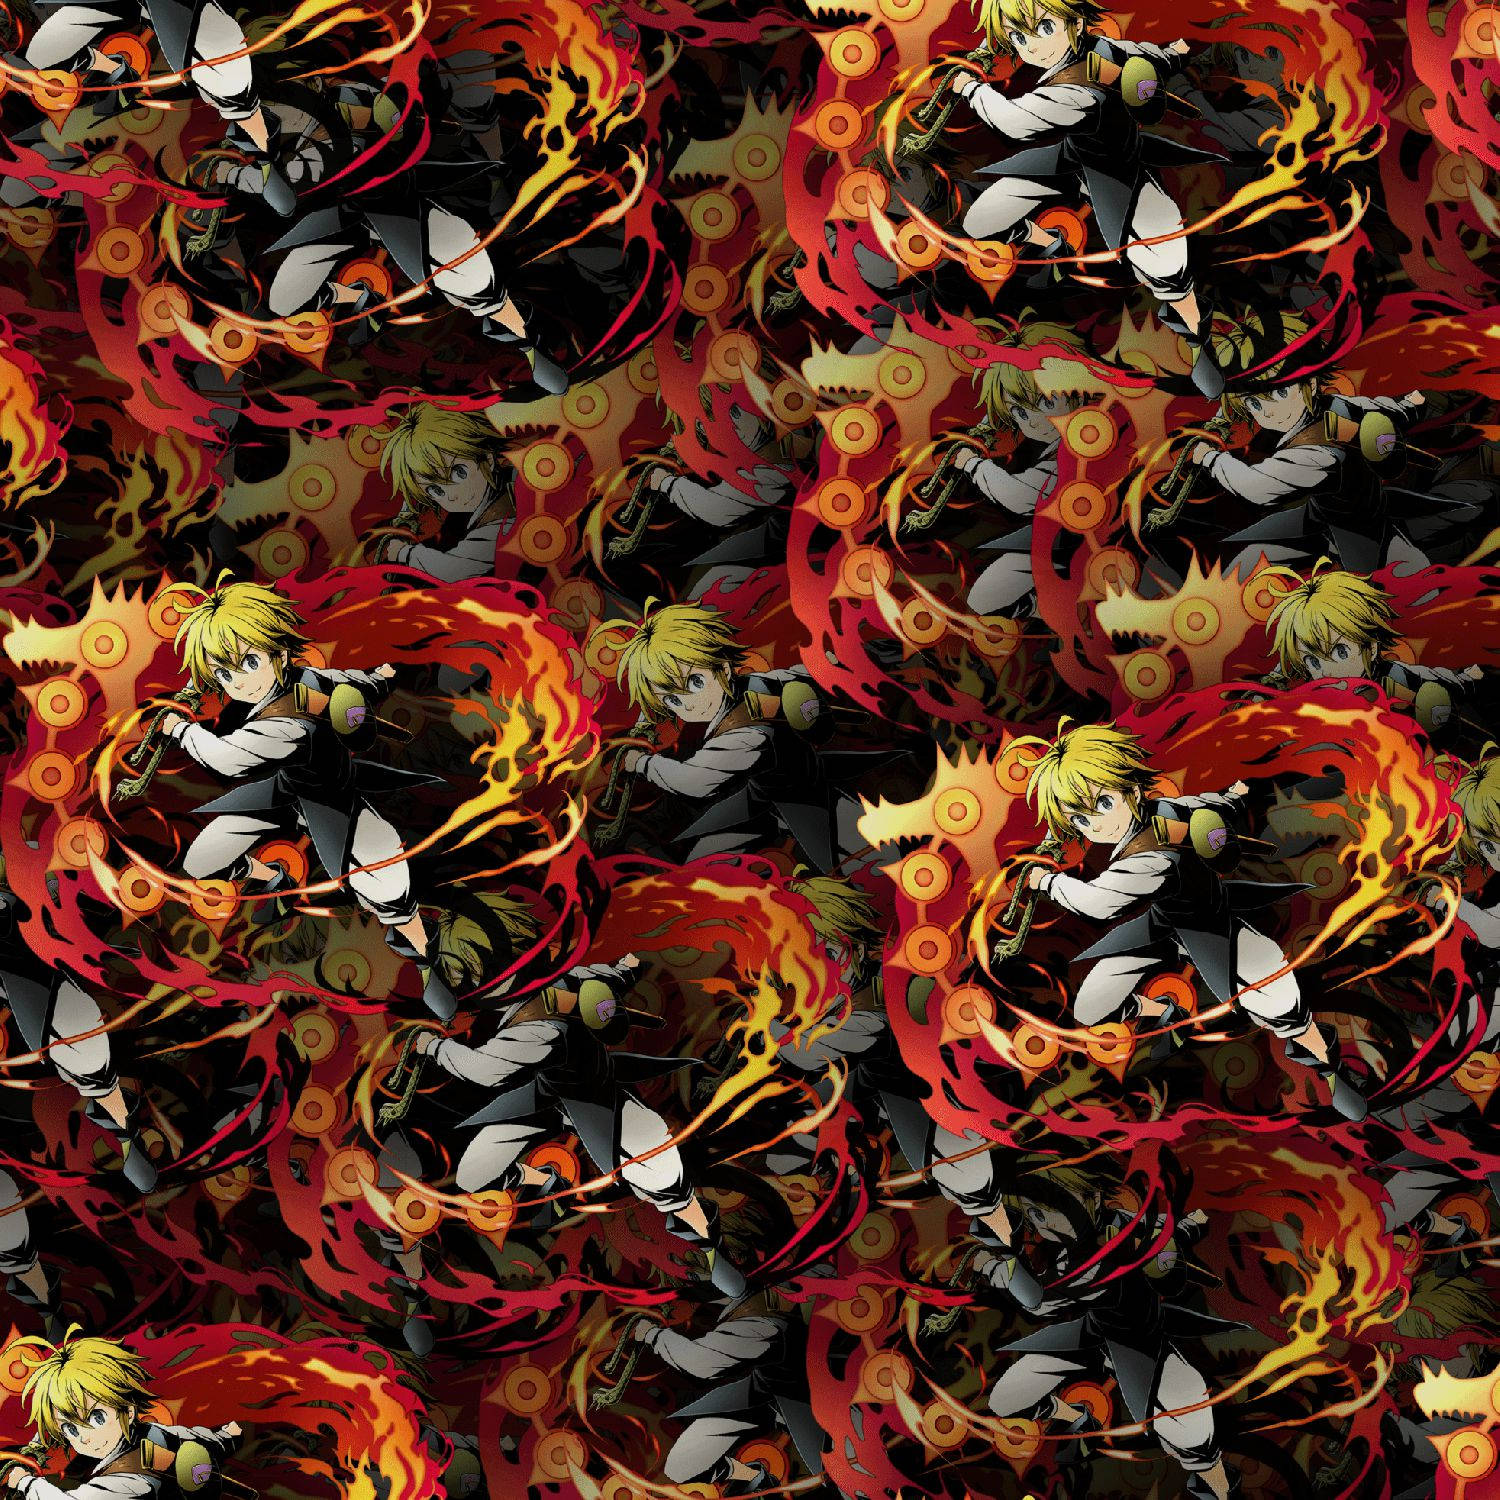 Meliodas Fiery Beast Pattern Wallpaper